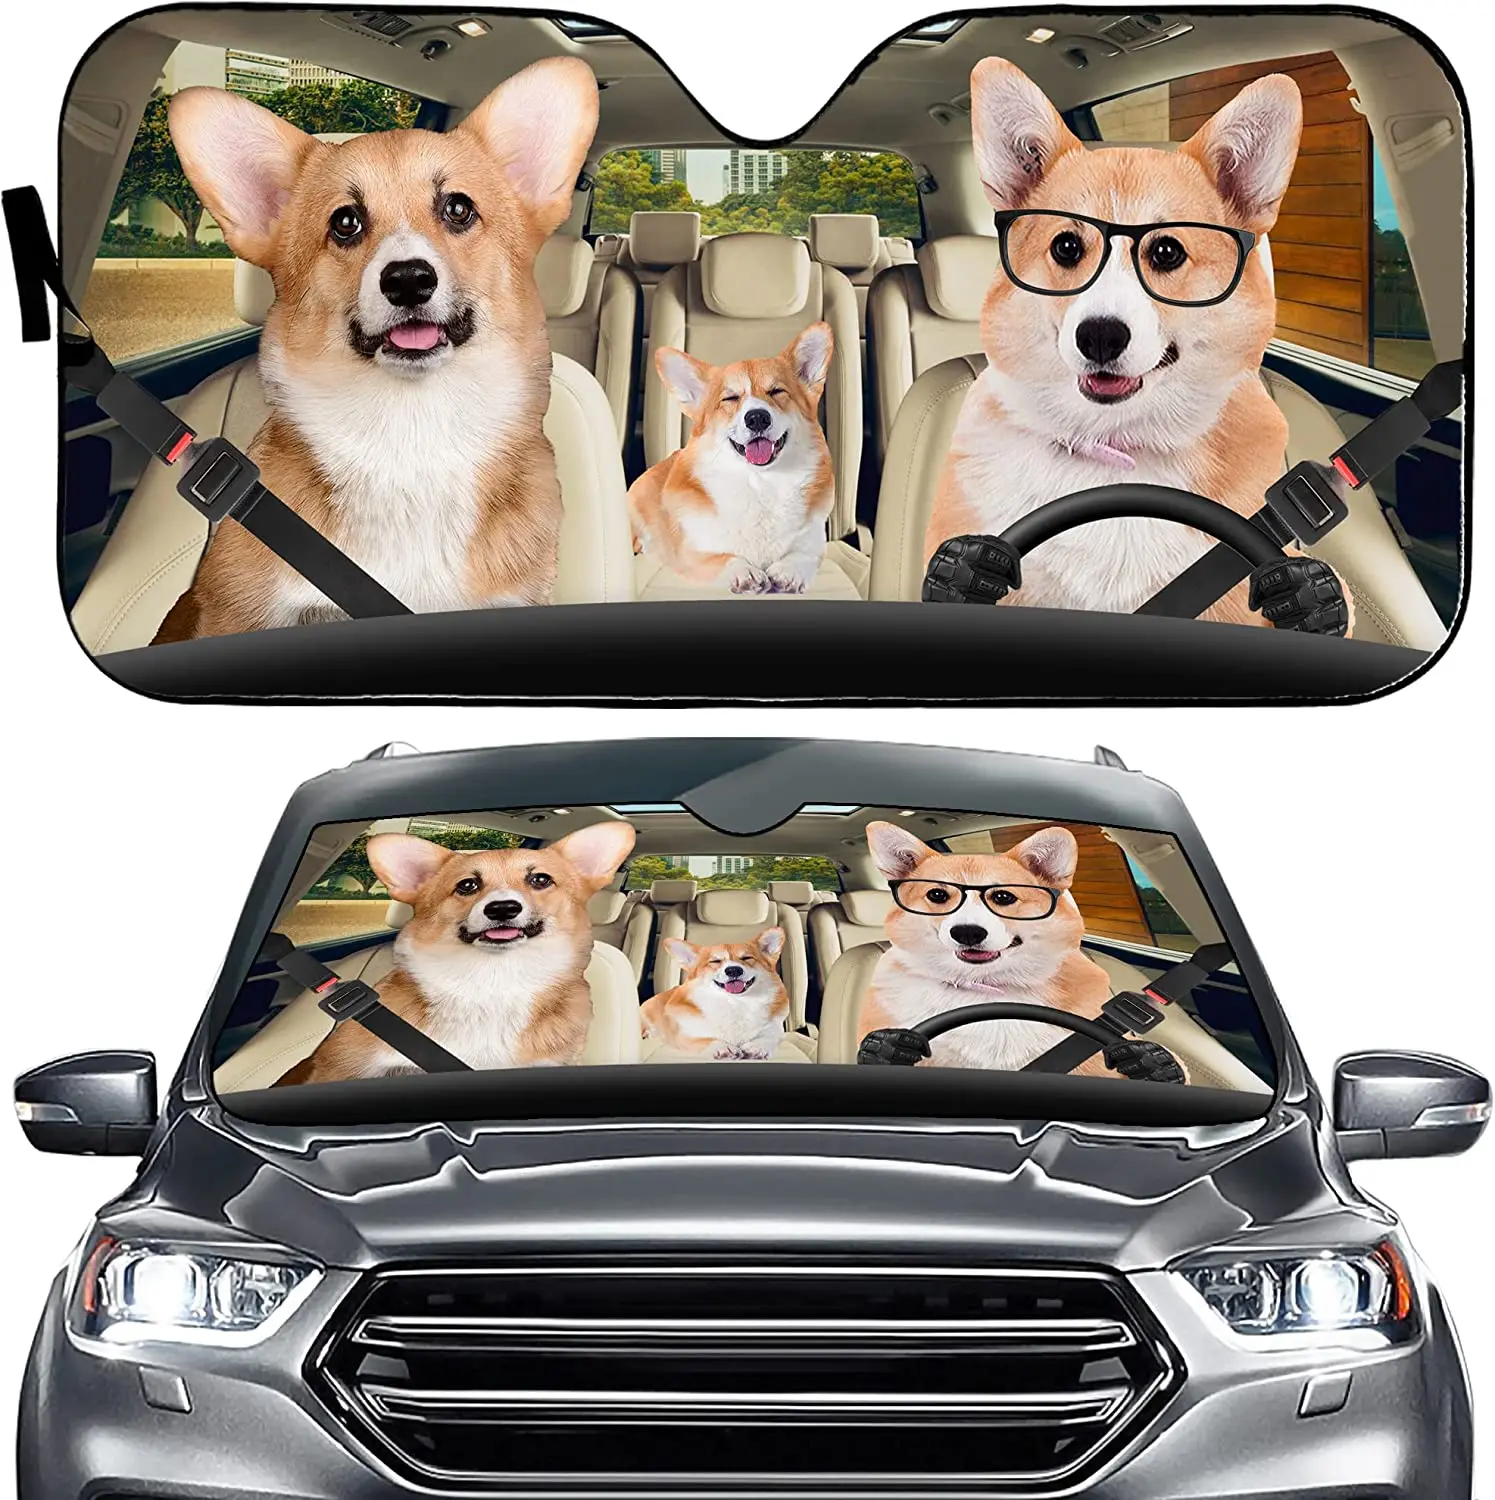 

Corgi Dogs - Parasol para parabrisas de coche, divertido parasol para coche, coche, camión, SUV, furgoneta, 57 x 27.5 pulgadas